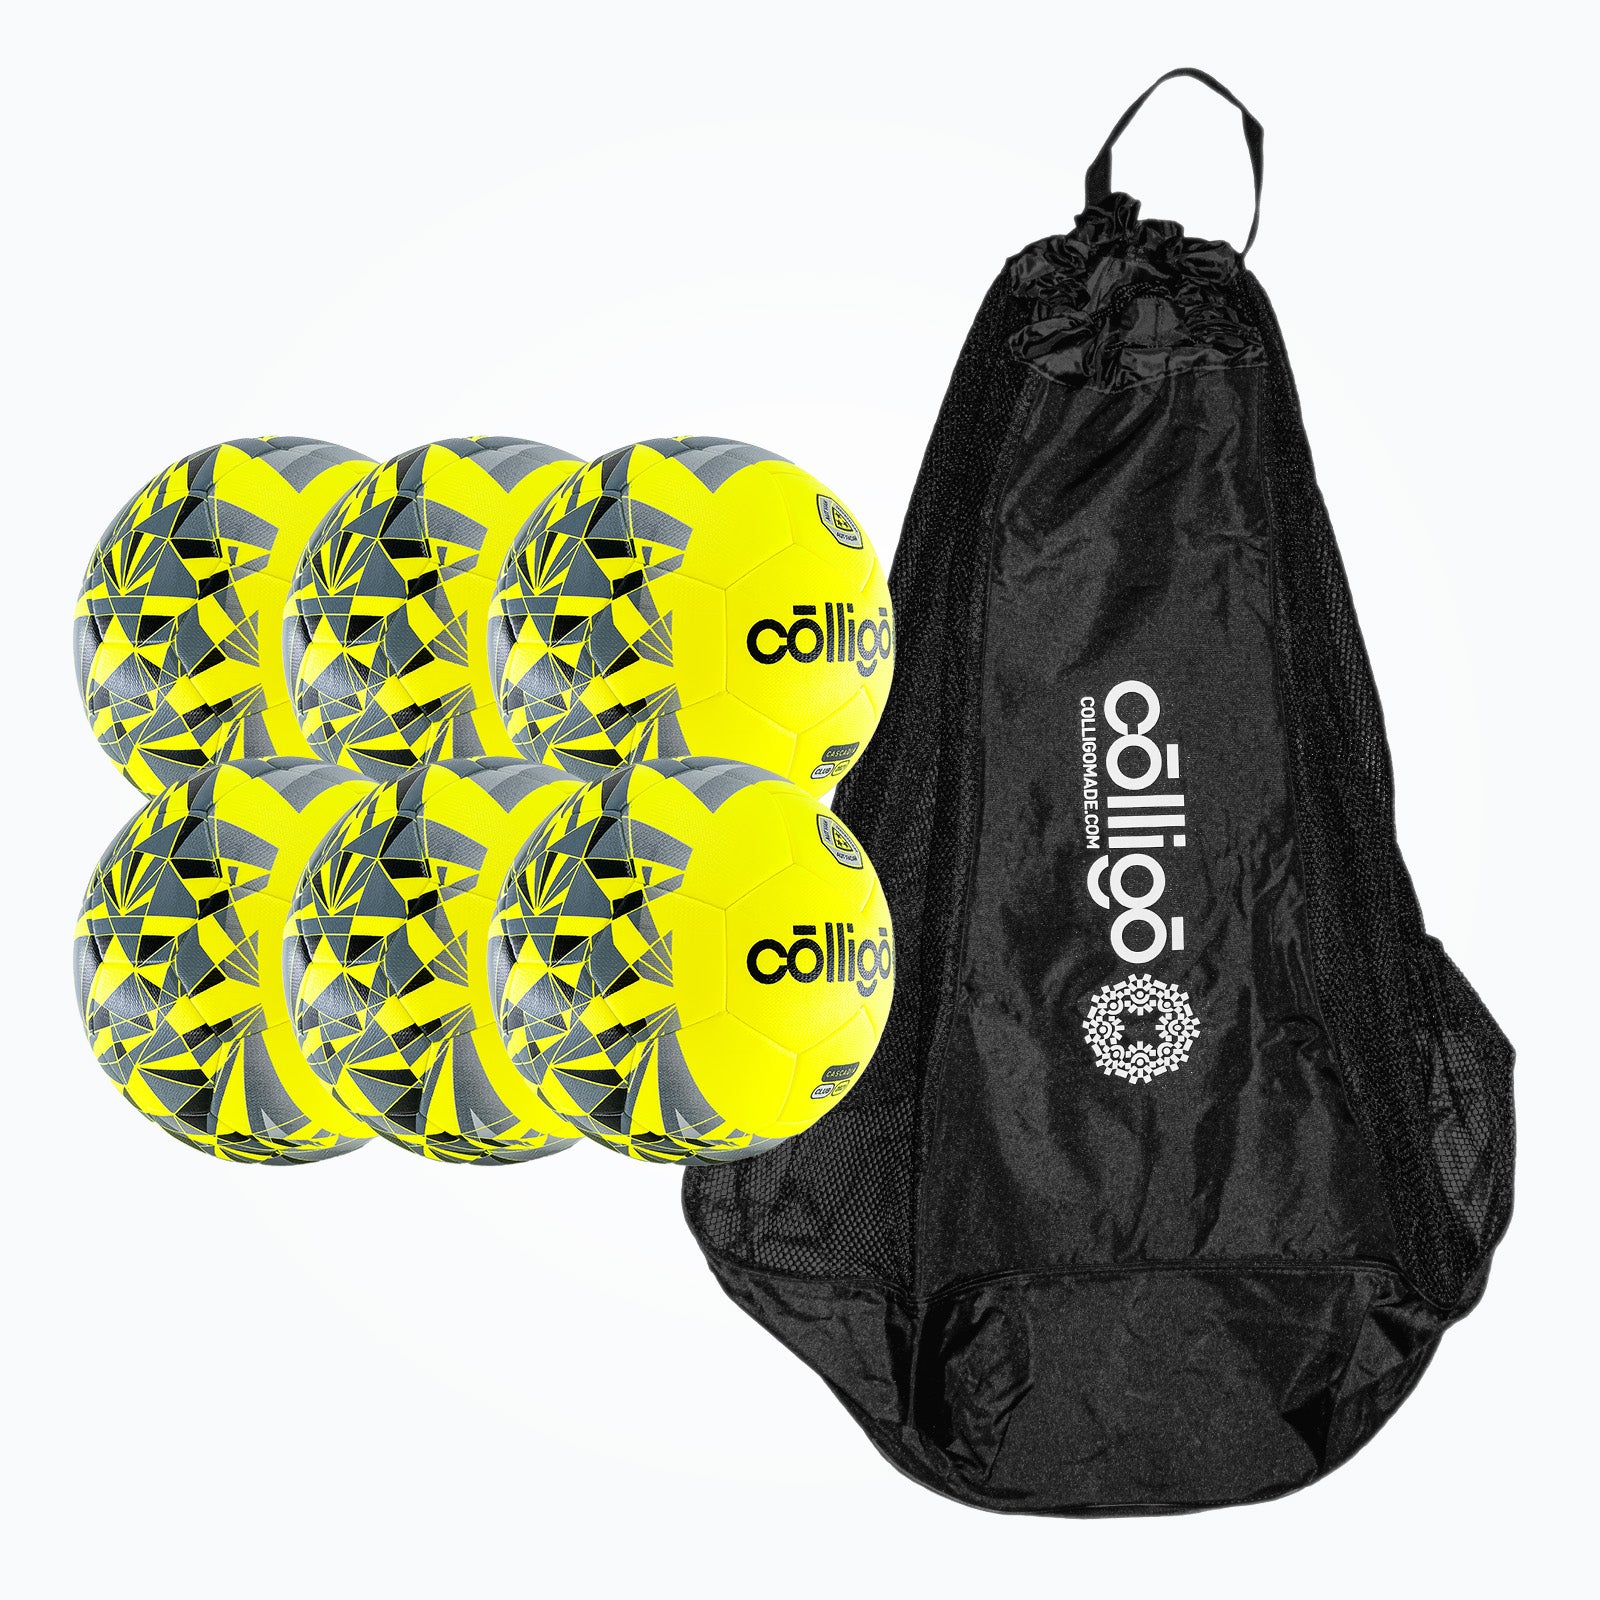 Cascadia Neon Soccer Ball Bundle - Colligo